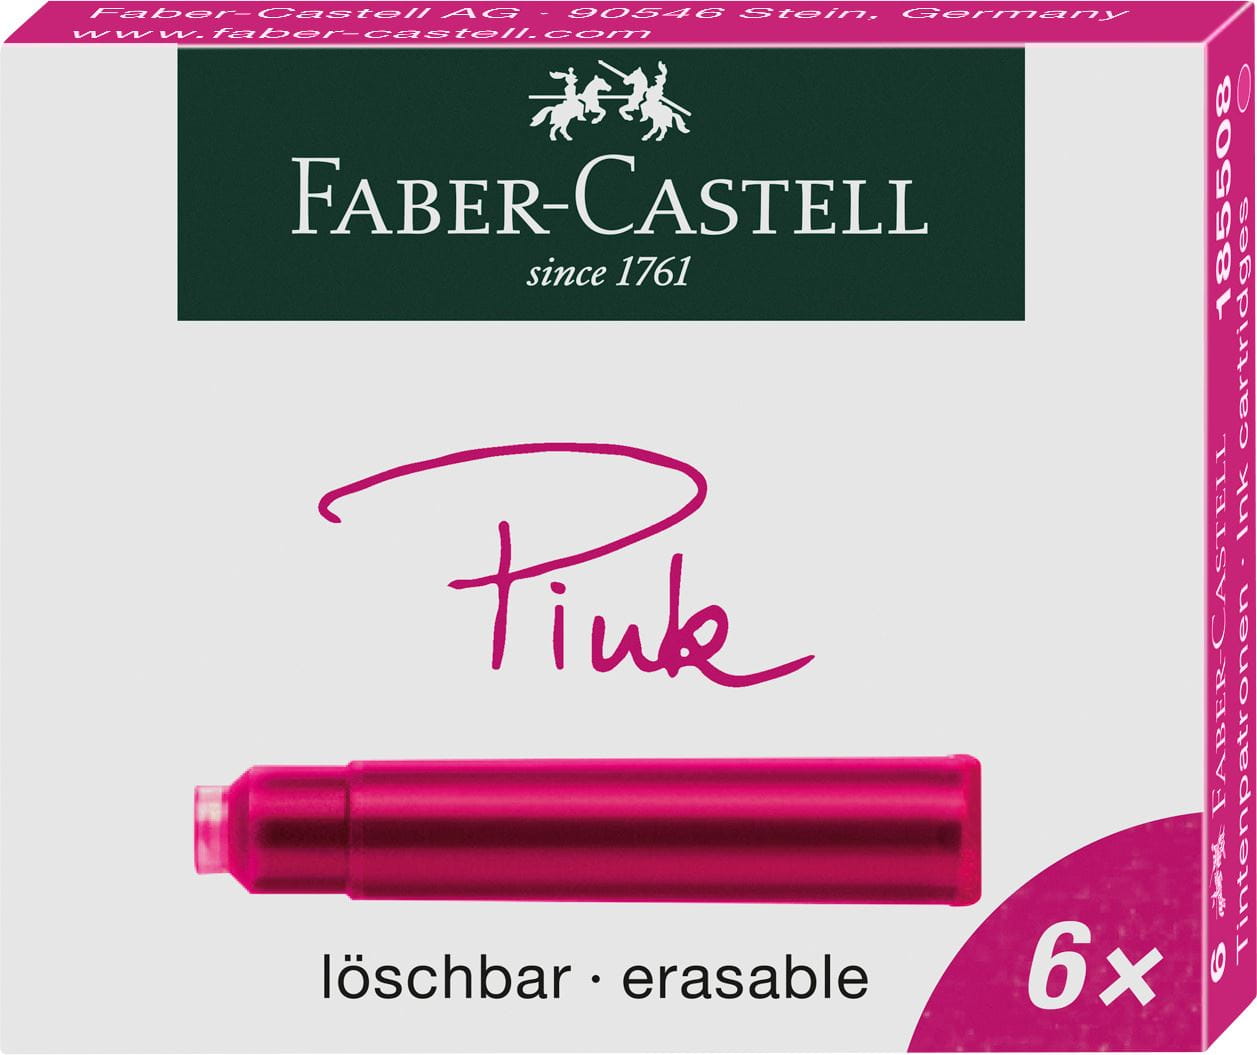 Faber-Castell - Tintenpatronen, Standard, 6x pink löschbar